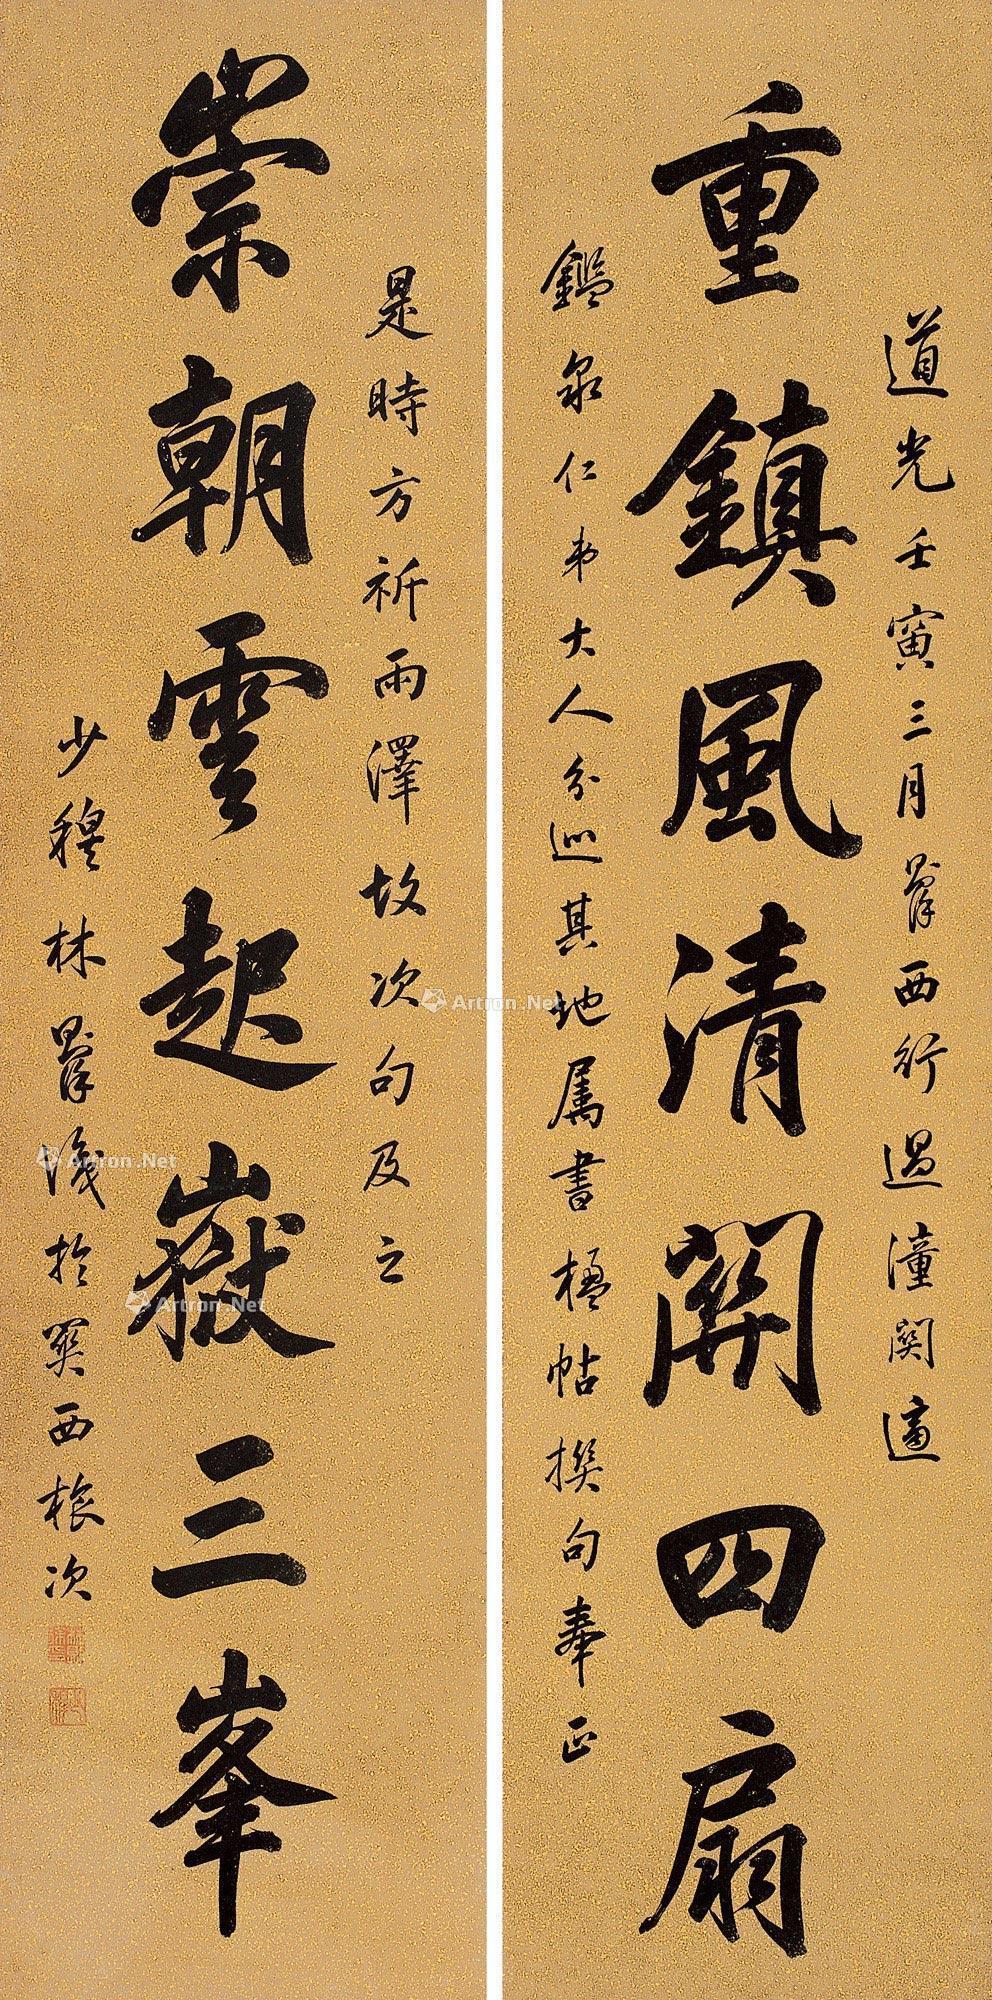 5×33cm×2 作品分类 中国书画>书法 创作年代  壬寅(1842年)作  估价